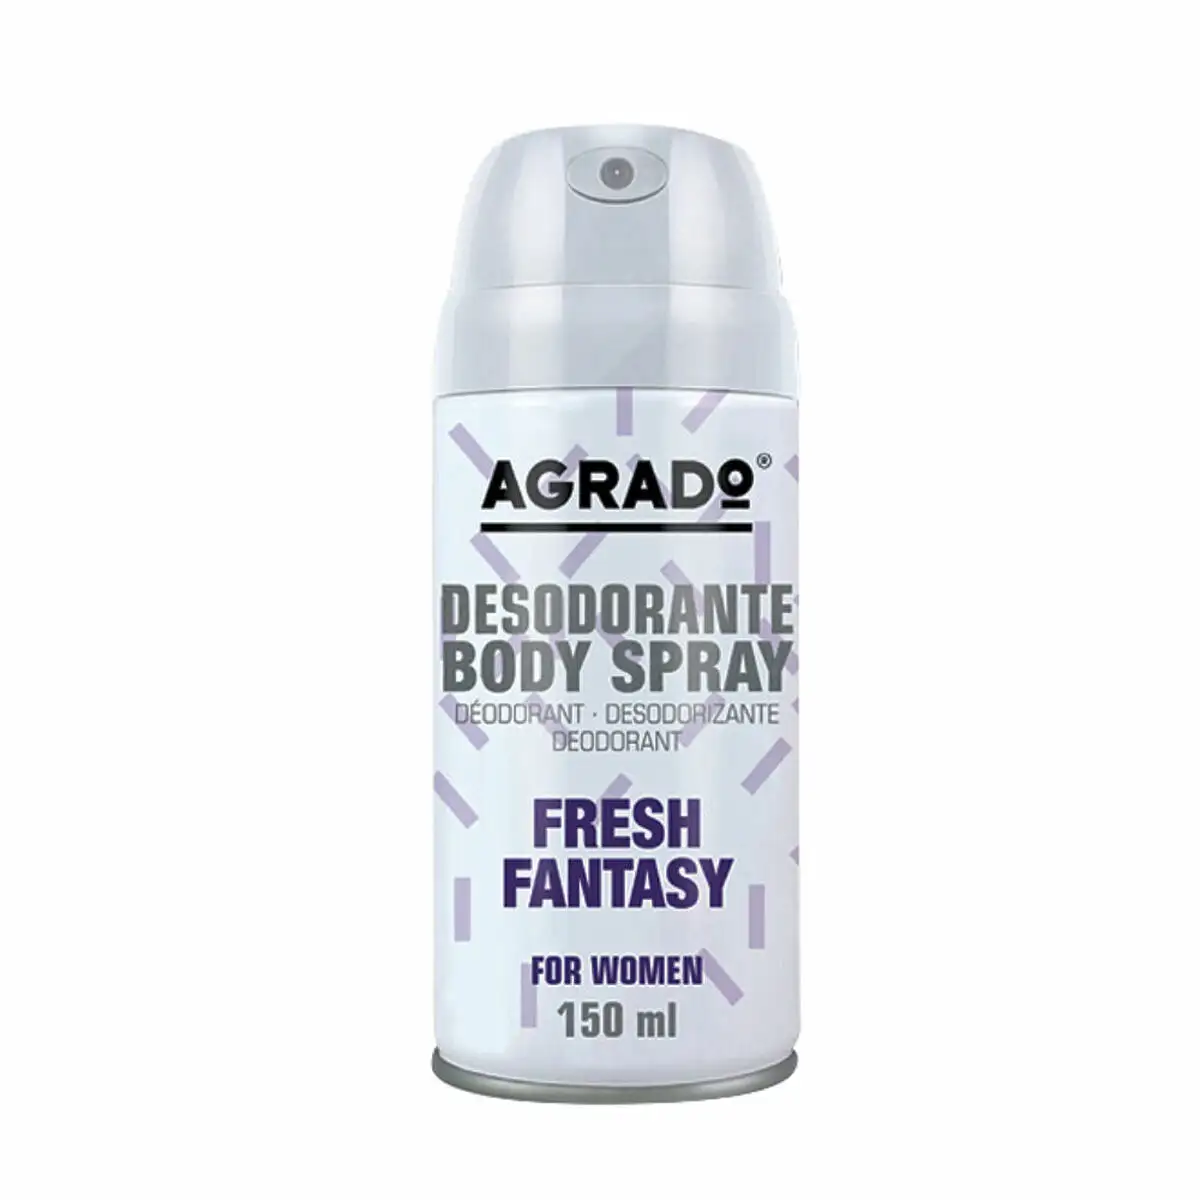 Spray deodorant agrado fresh fantasy 150 ml _8779. DIAYTAR SENEGAL - Votre Source de Découvertes Shopping. Naviguez à travers nos catégories et découvrez des articles qui vous surprendront et vous séduiront.